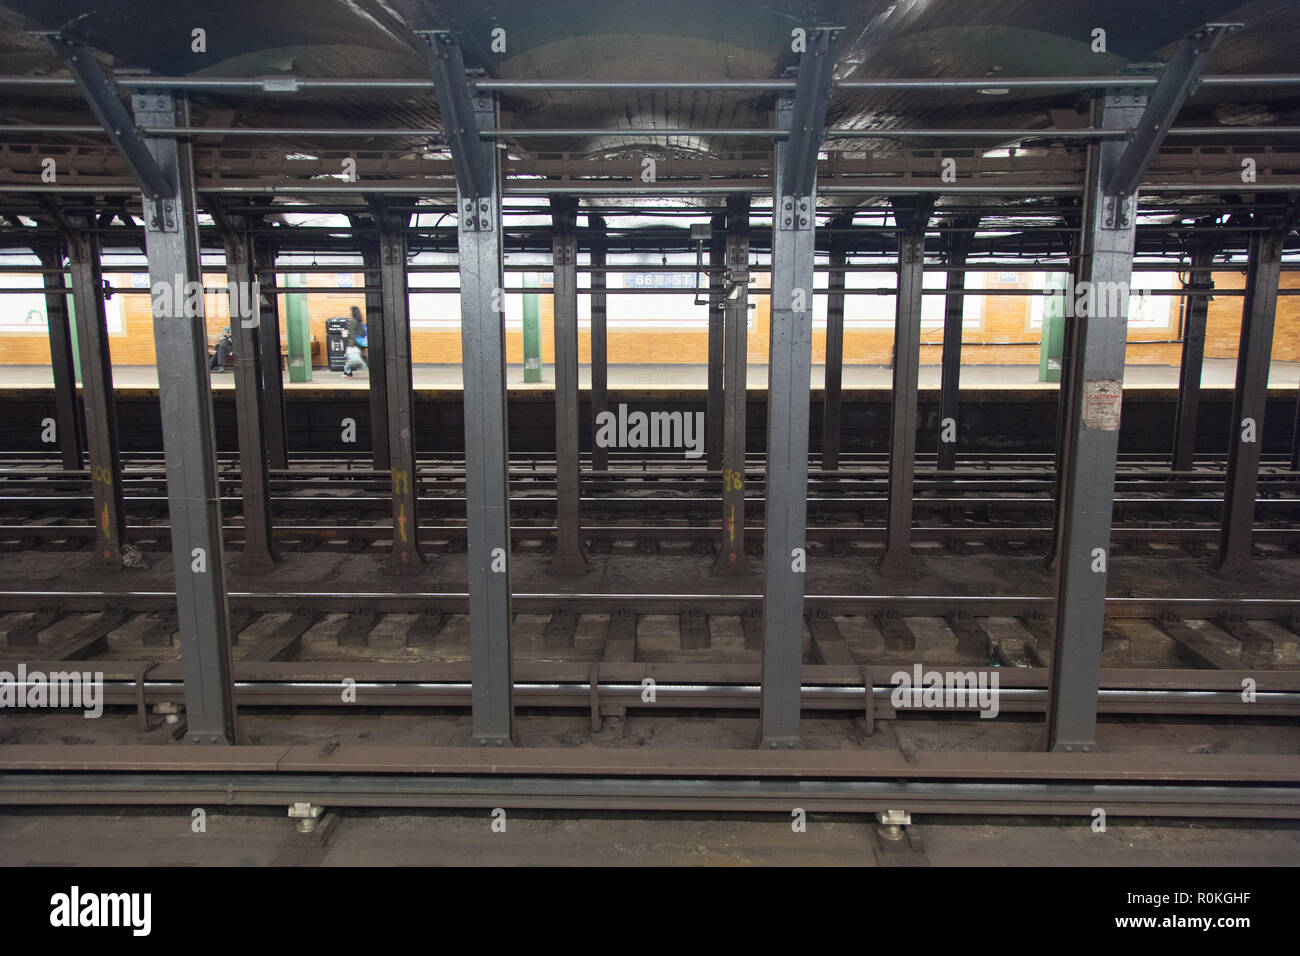 66 St, Lincoln Ctr de métro, Manhattan, New York City, États-Unis d'Amérique. Banque D'Images